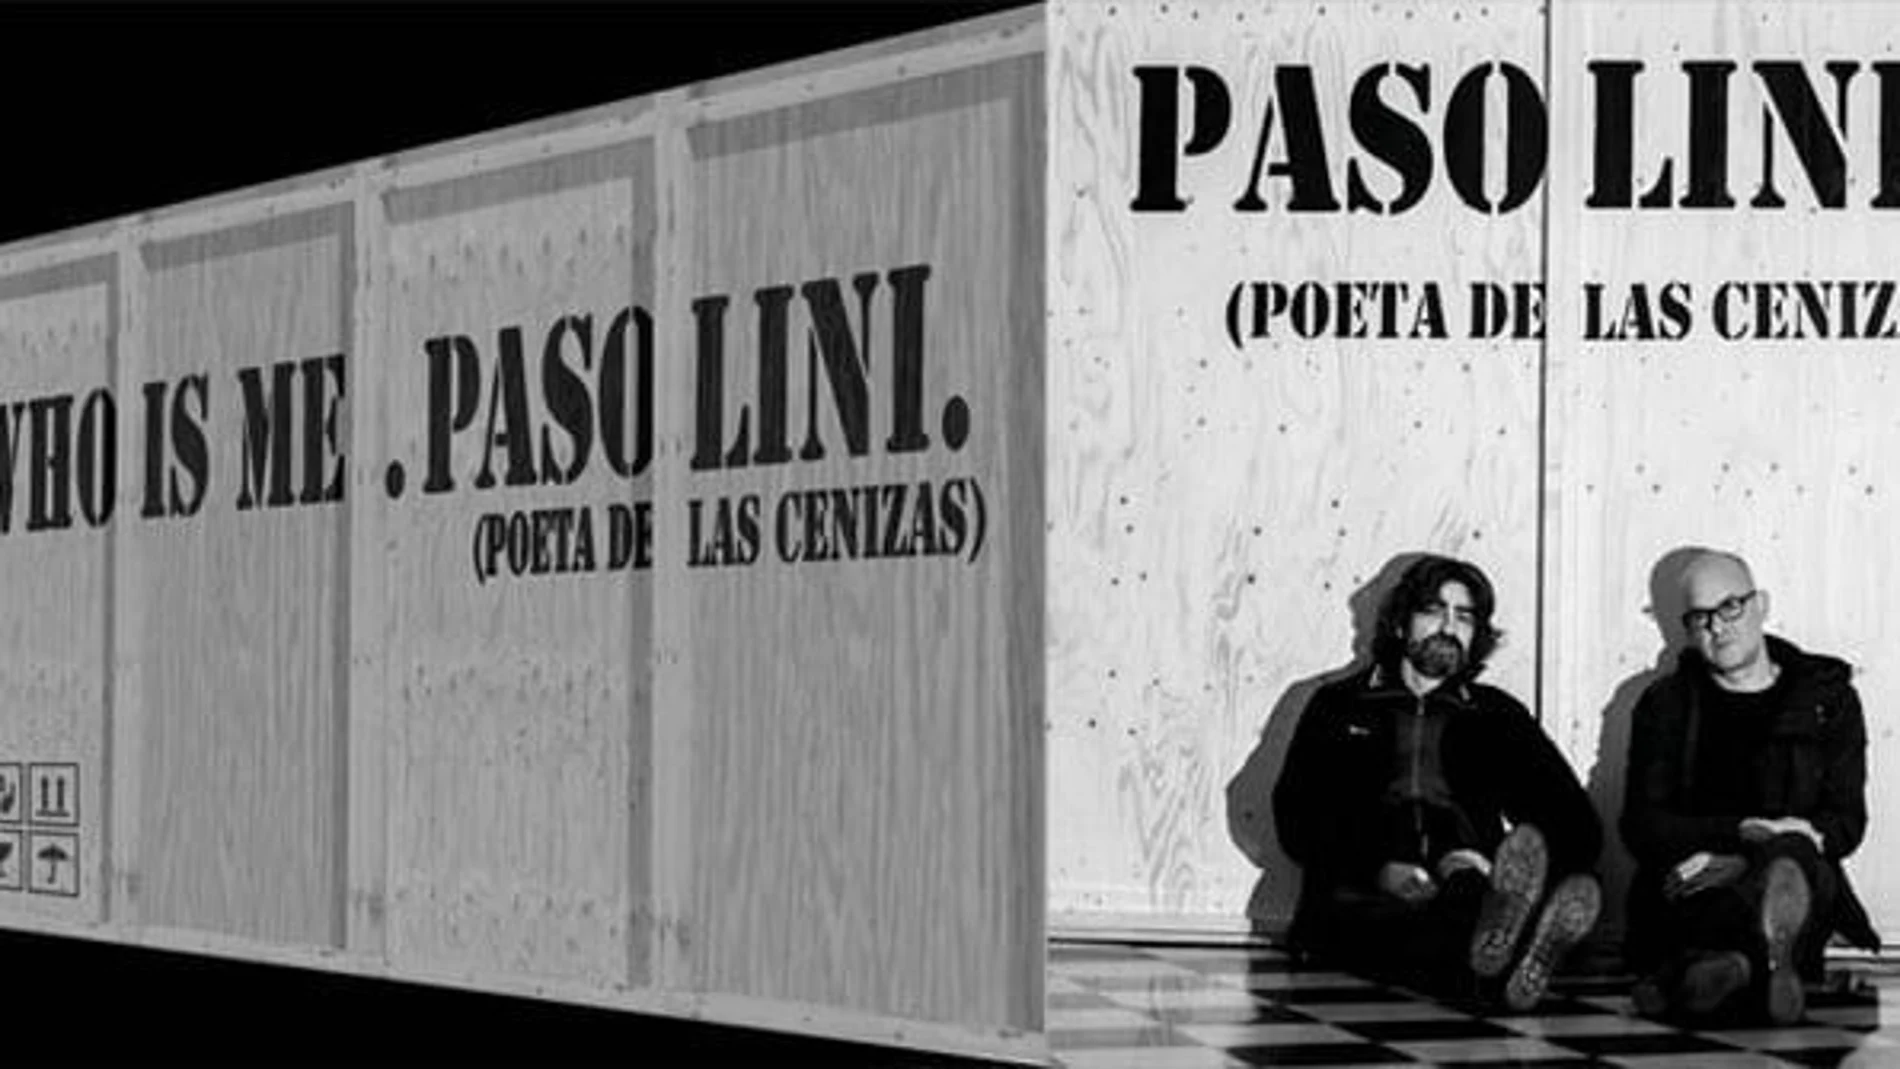 «Who is me. Pasolini (Poeta de las cenizas)»: Apuntes de un creador total